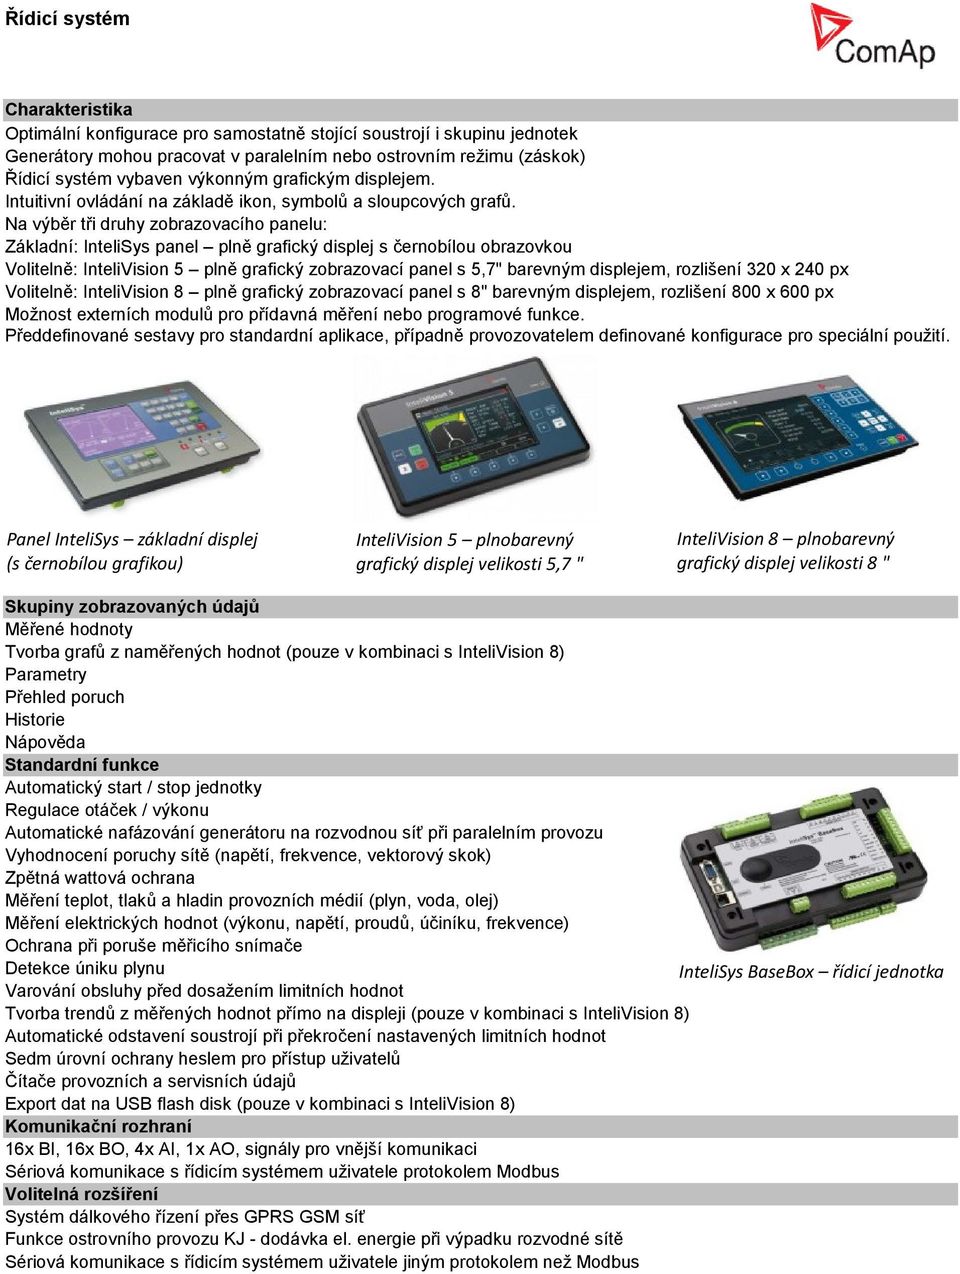 Na výběr tři druhy zobrazovacího panelu: Základní: InteliSys panel plně grafický displej s černobílou obrazovkou Volitelně: InteliVision 5 plně grafický zobrazovací panel s 5,7" barevným displejem,